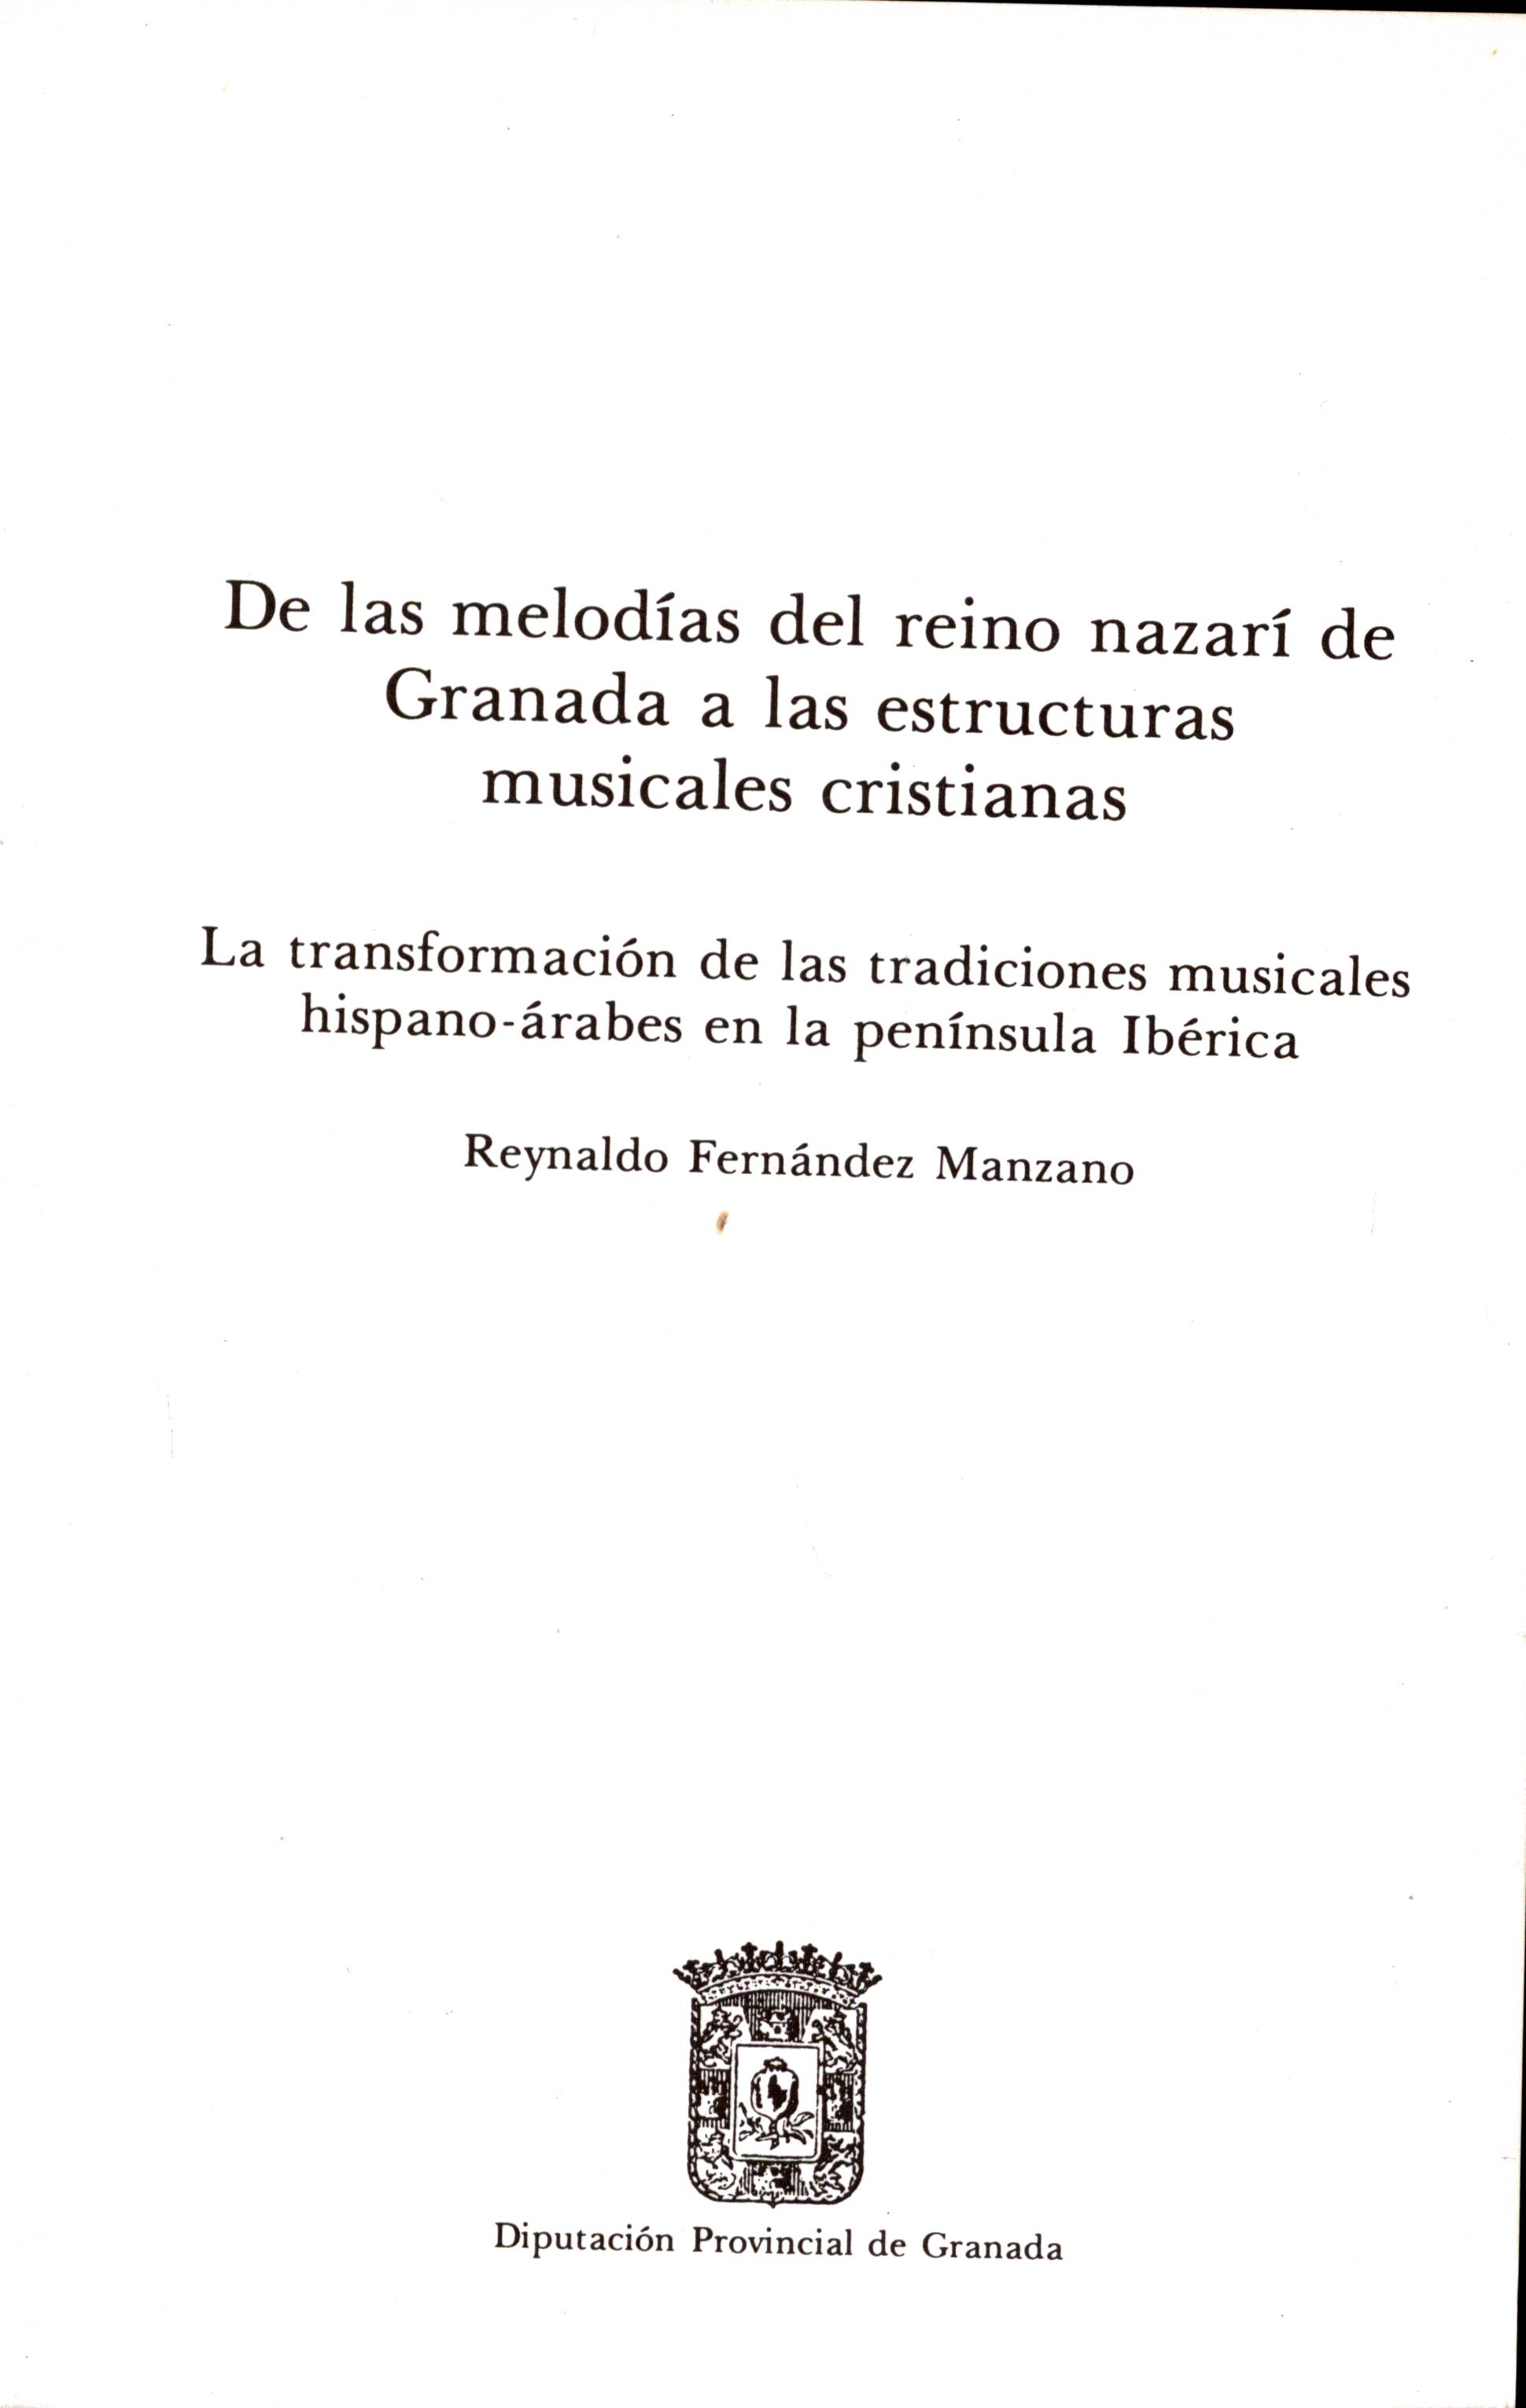 De las melodías del reino nazarí de Granada a las estructuras musicales cristianas